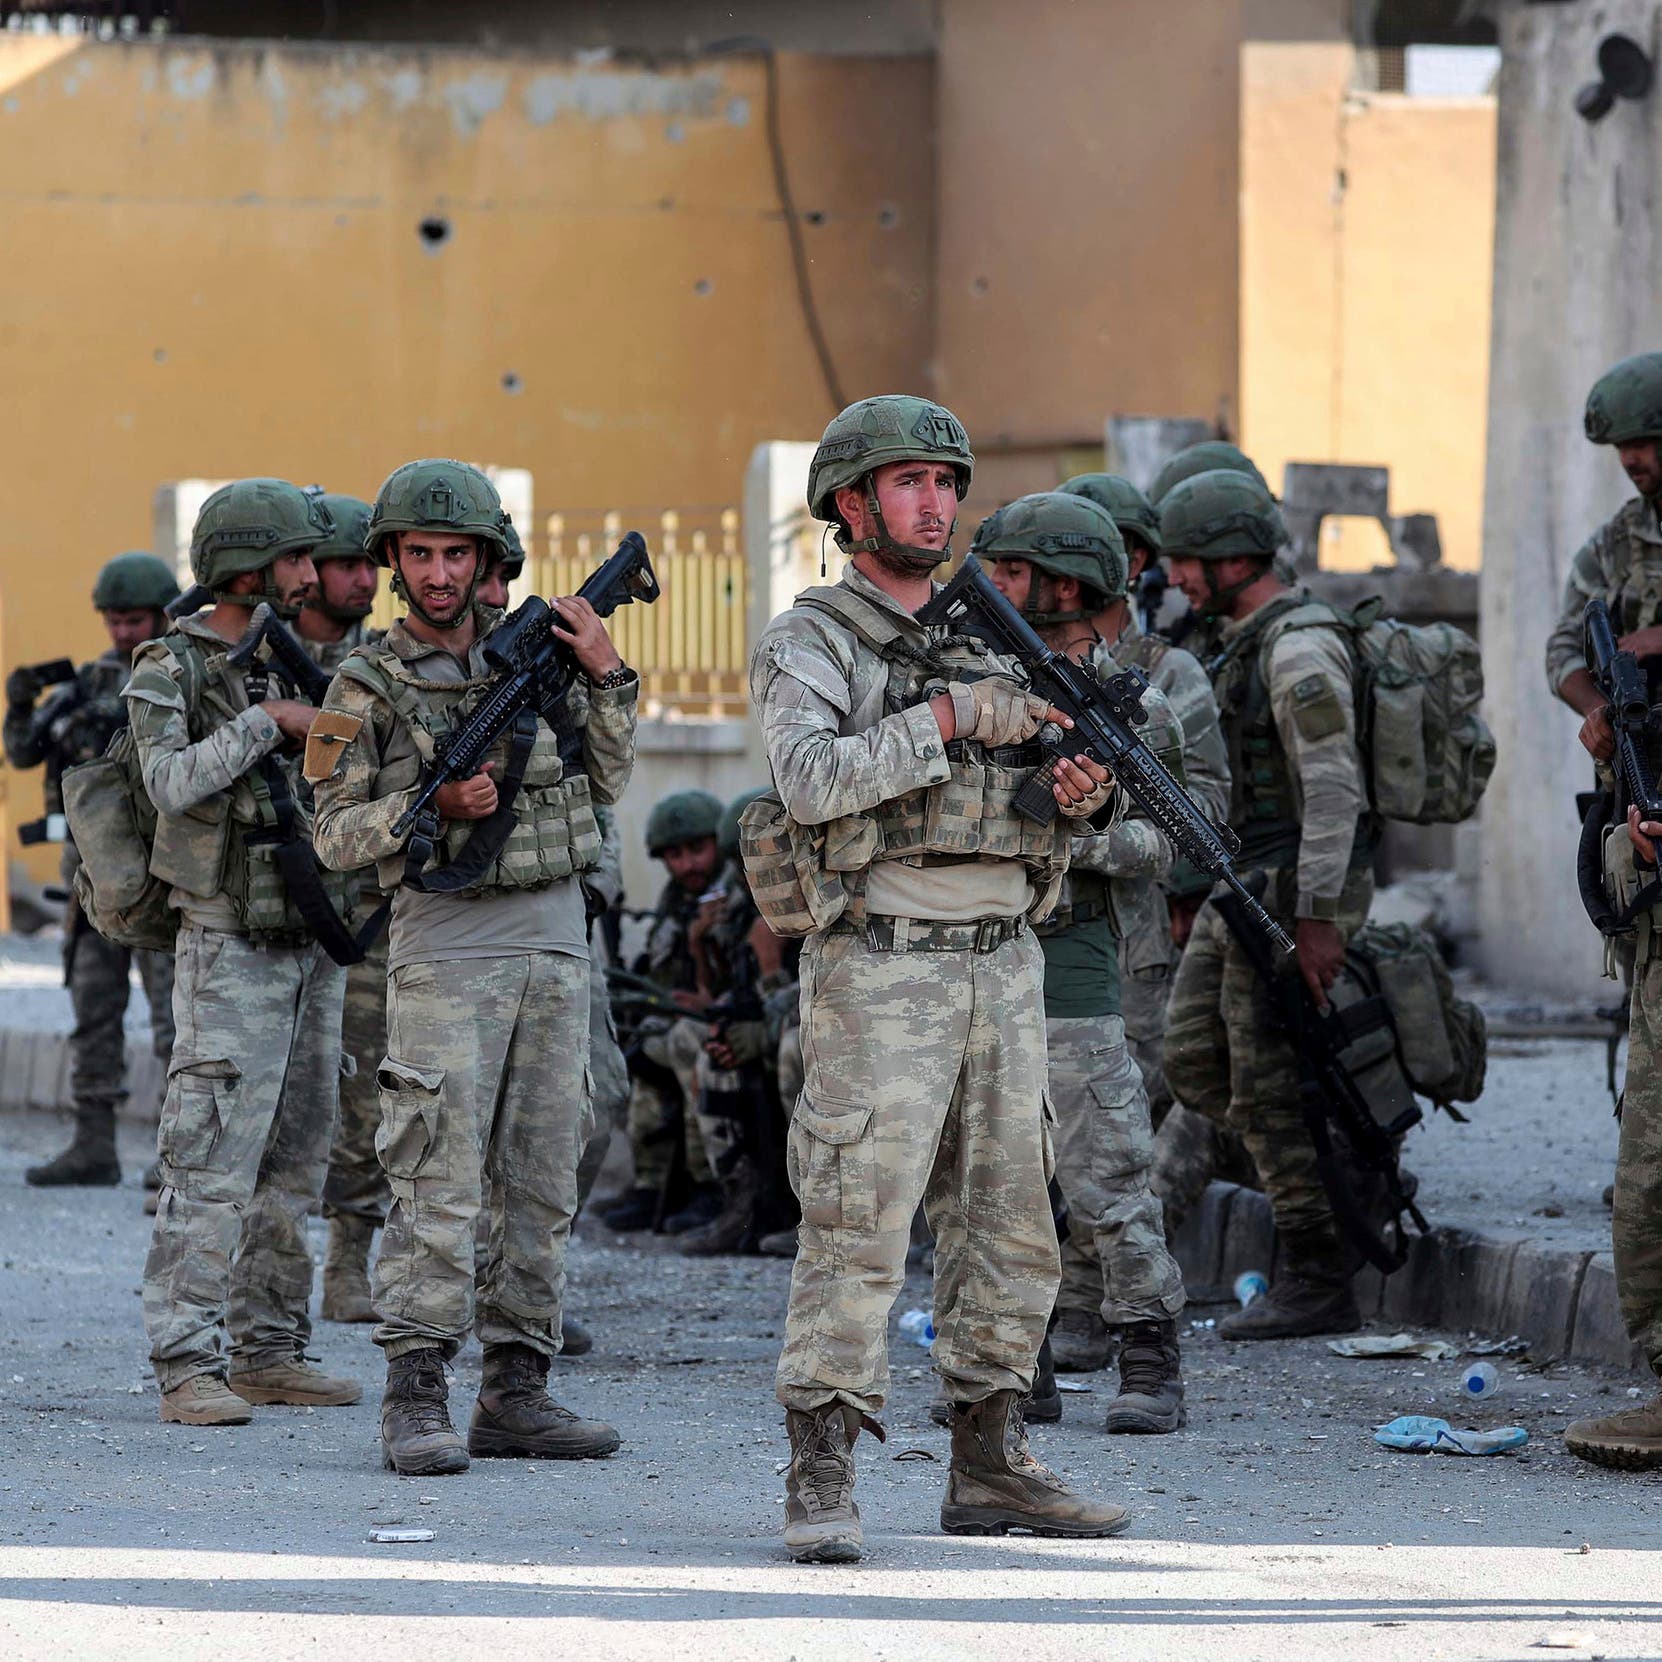 وزارة الدفاع: مقتل جنديين تركيين باشتباكات مع مسلحين أكراد